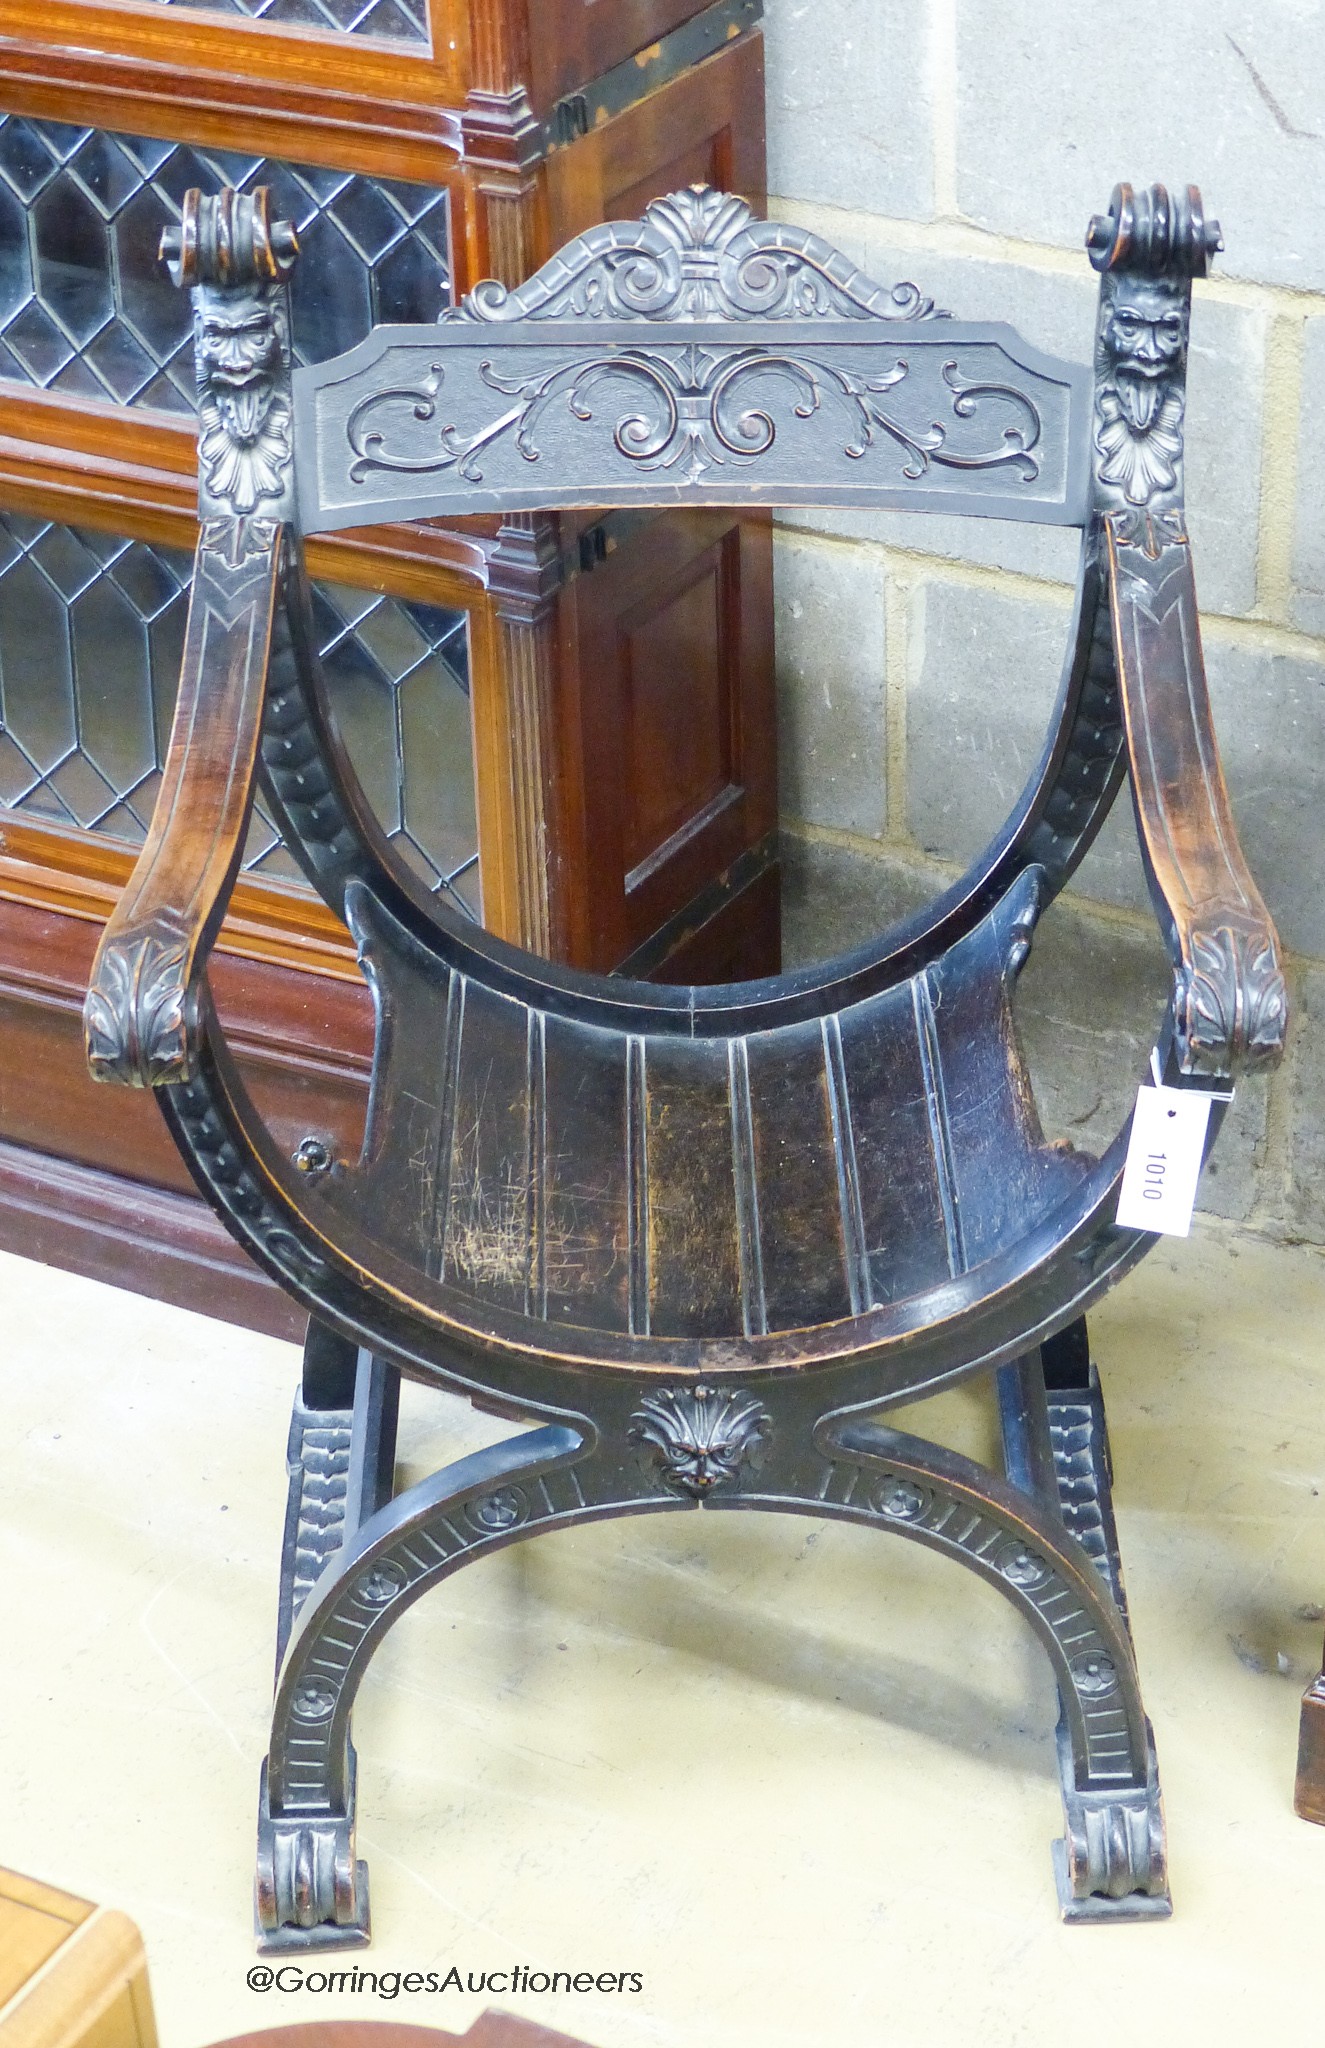 An Ebonised Sagrada style x-frame elbow chair.